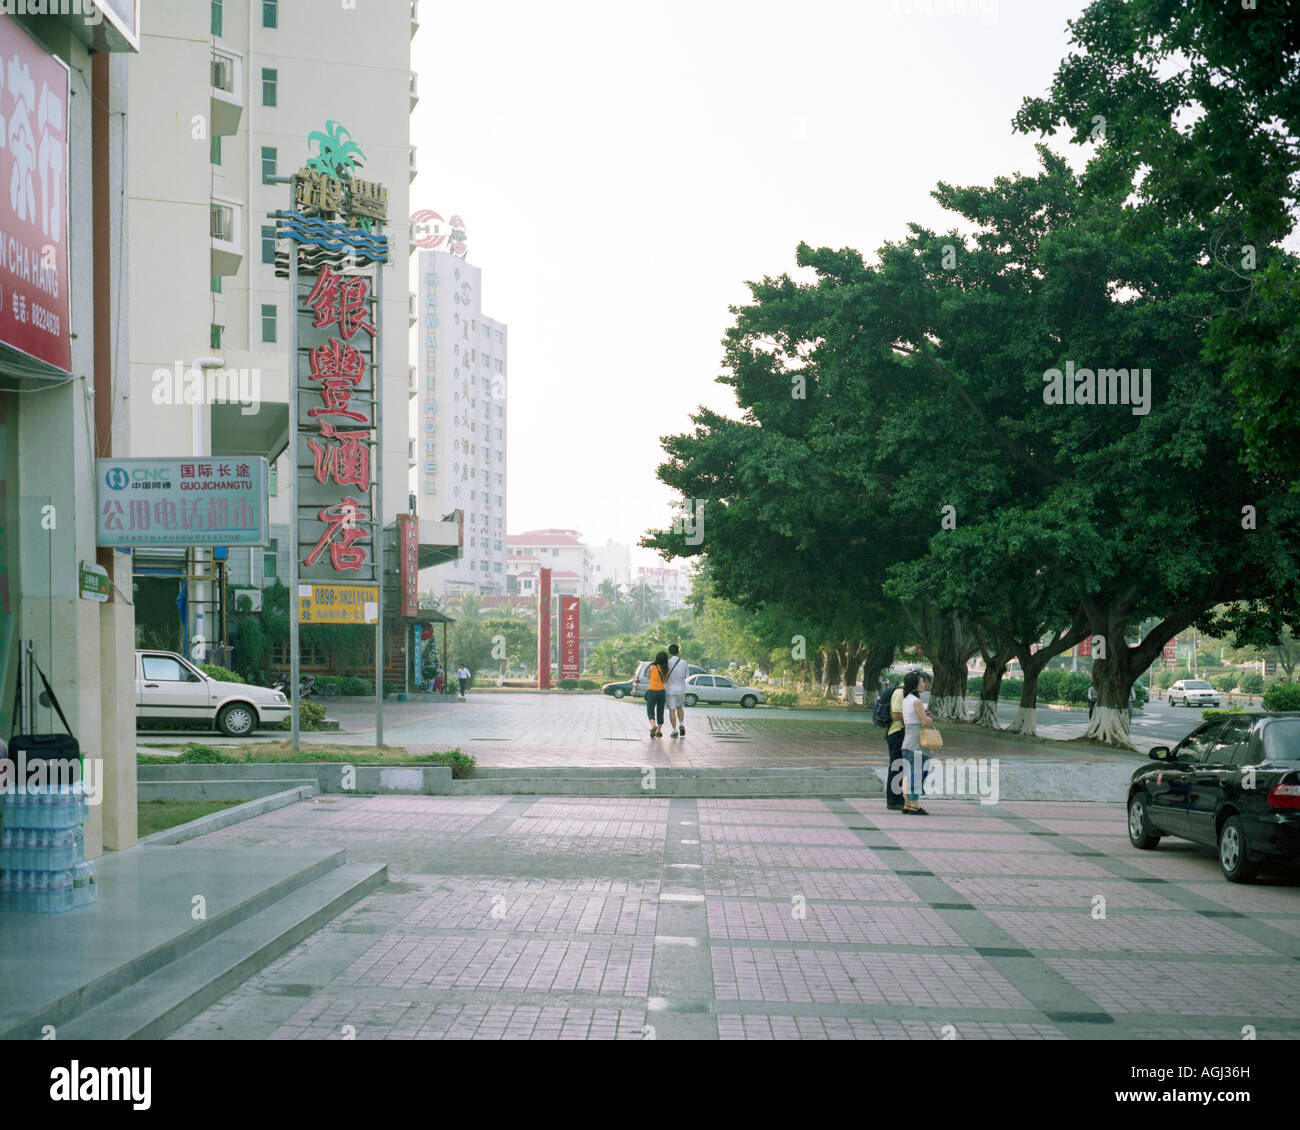 Sidewalk at Dadonghai, Sanya, China Stock Photo